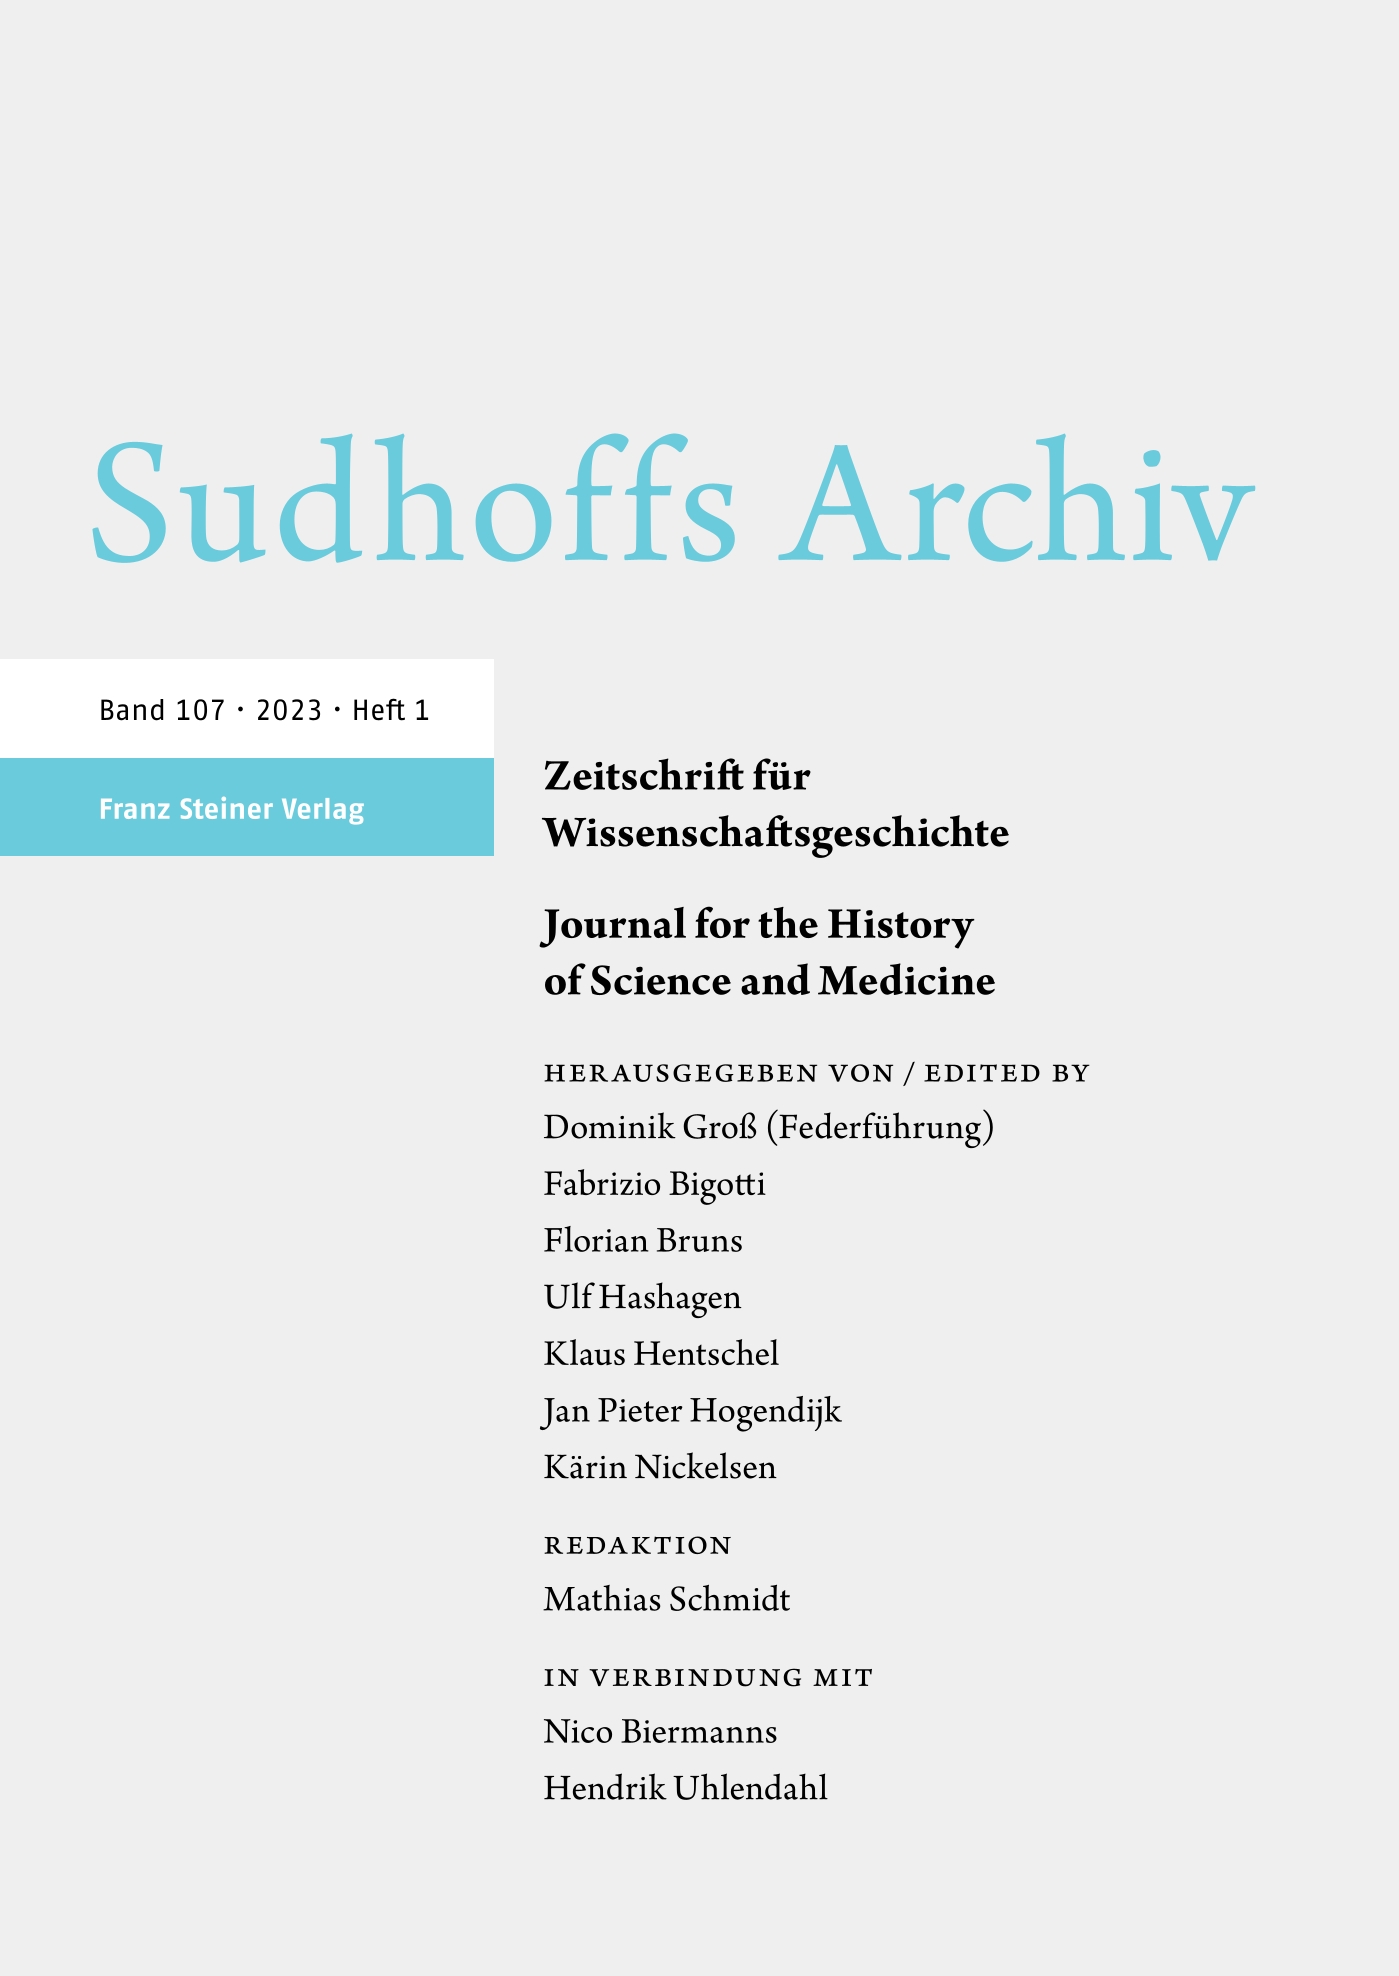 Sudhoffs Archiv - print + online